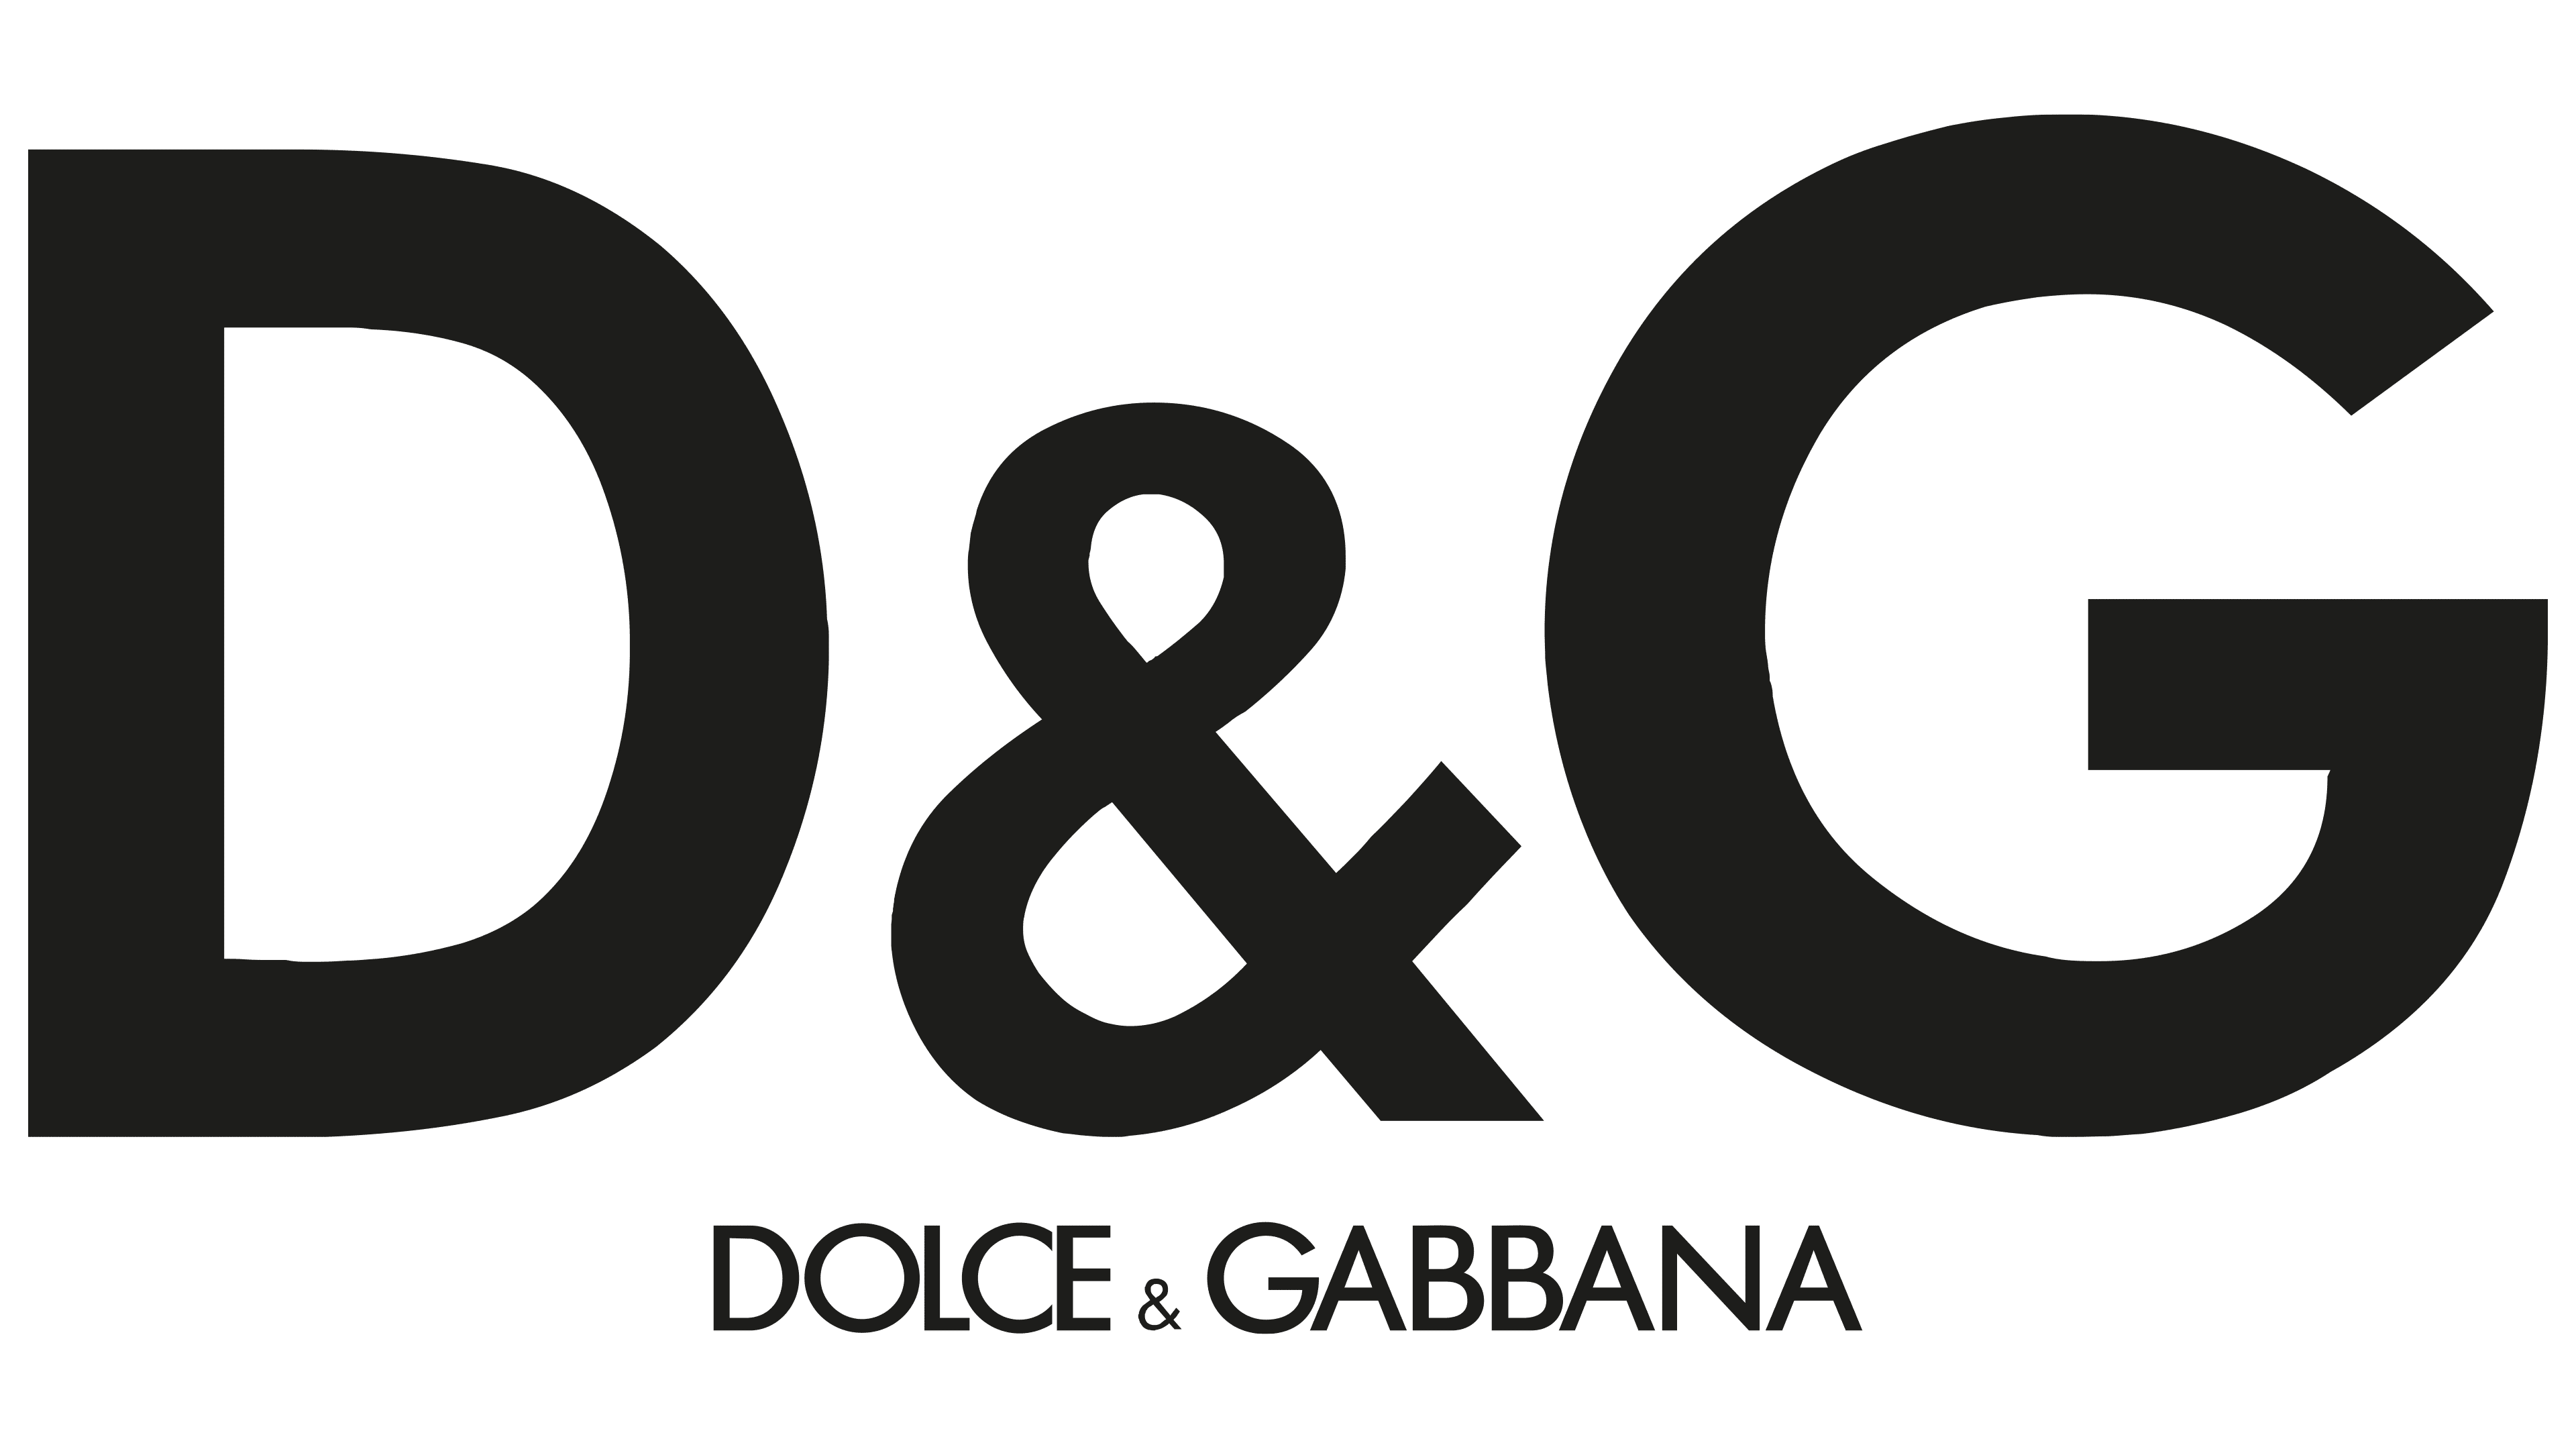 the dolce & gabbana